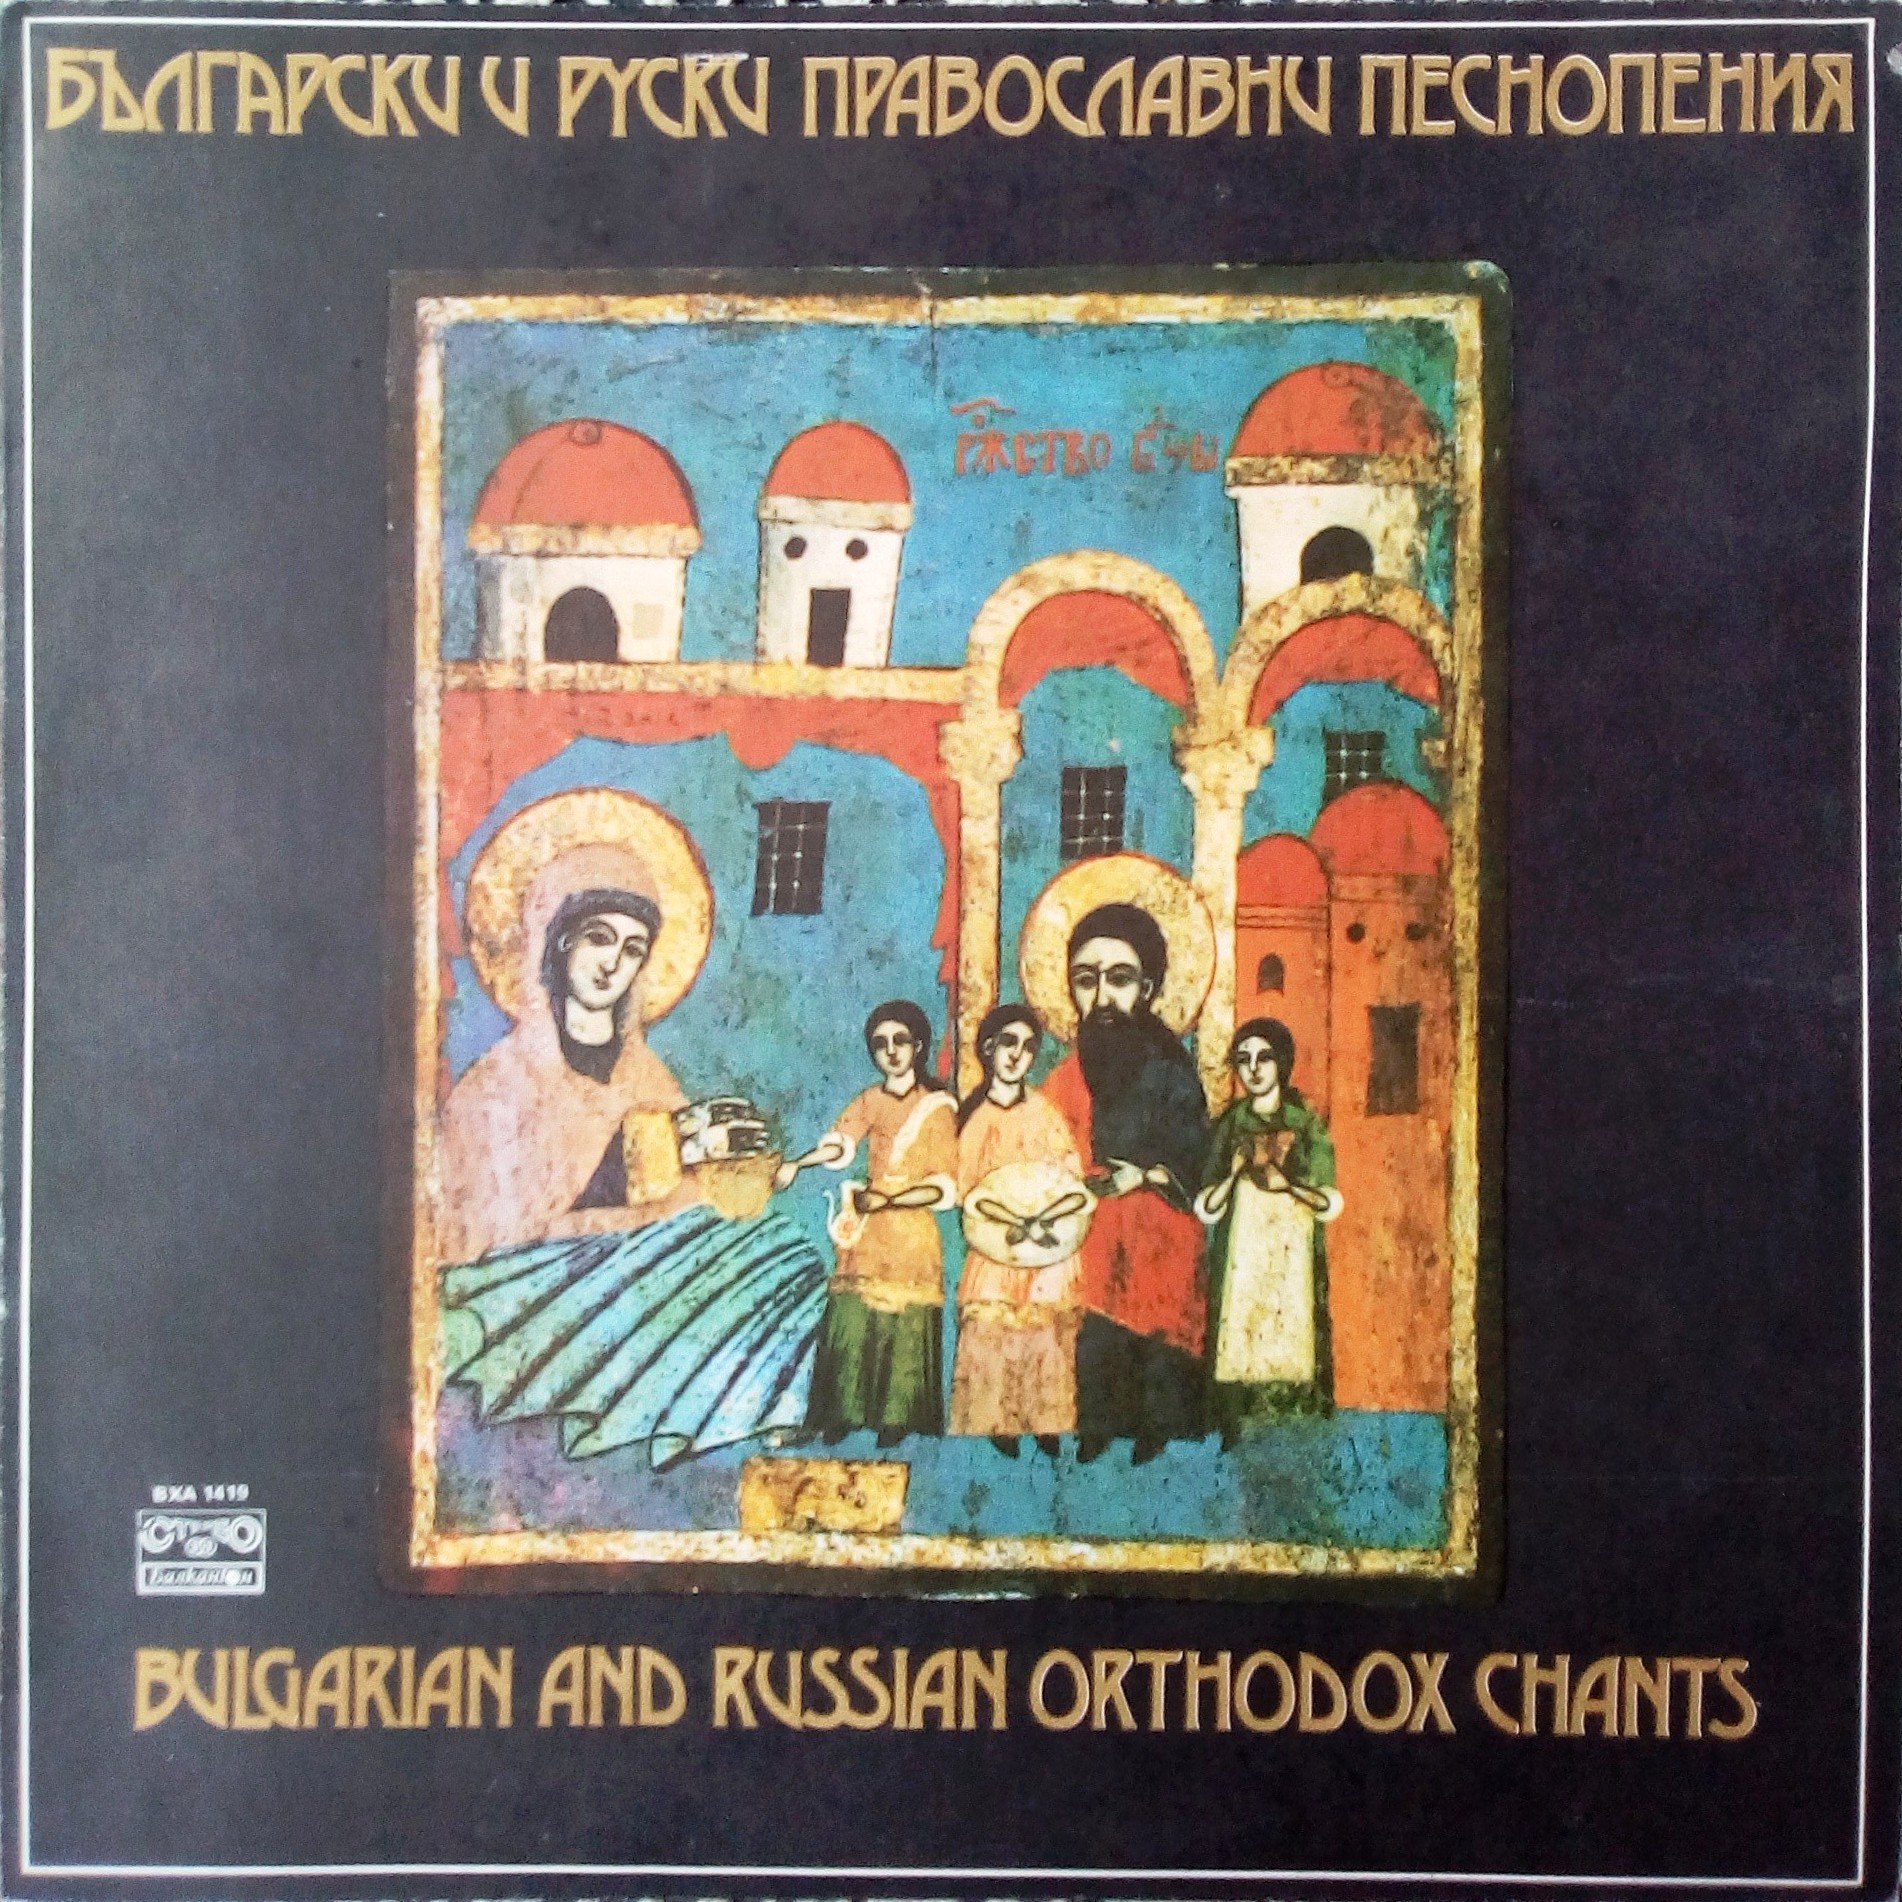 Български и руски православни песнопения. Изпълнява камерен мъжки хор, диригент Димитър Русков